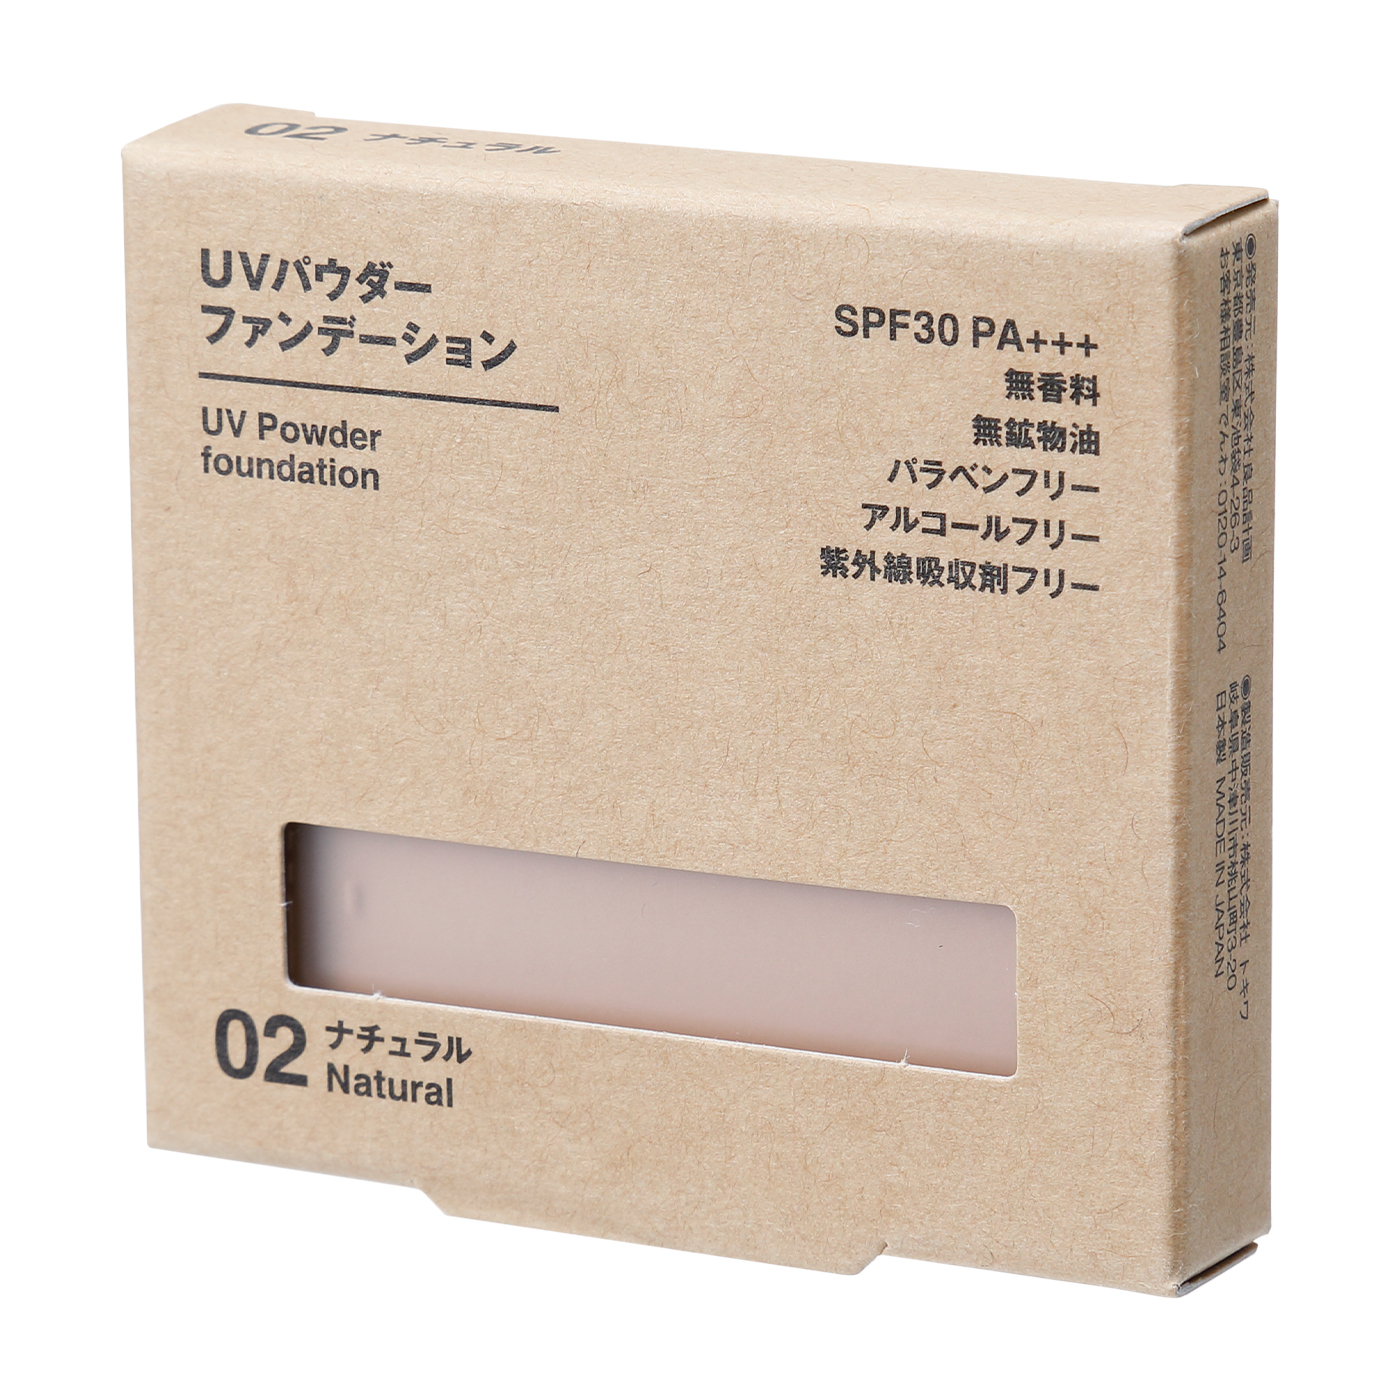 無印良品 UVパウダーファンデーション・ライトベージュ SPF30・PA    9.4g 02545932 良品計画